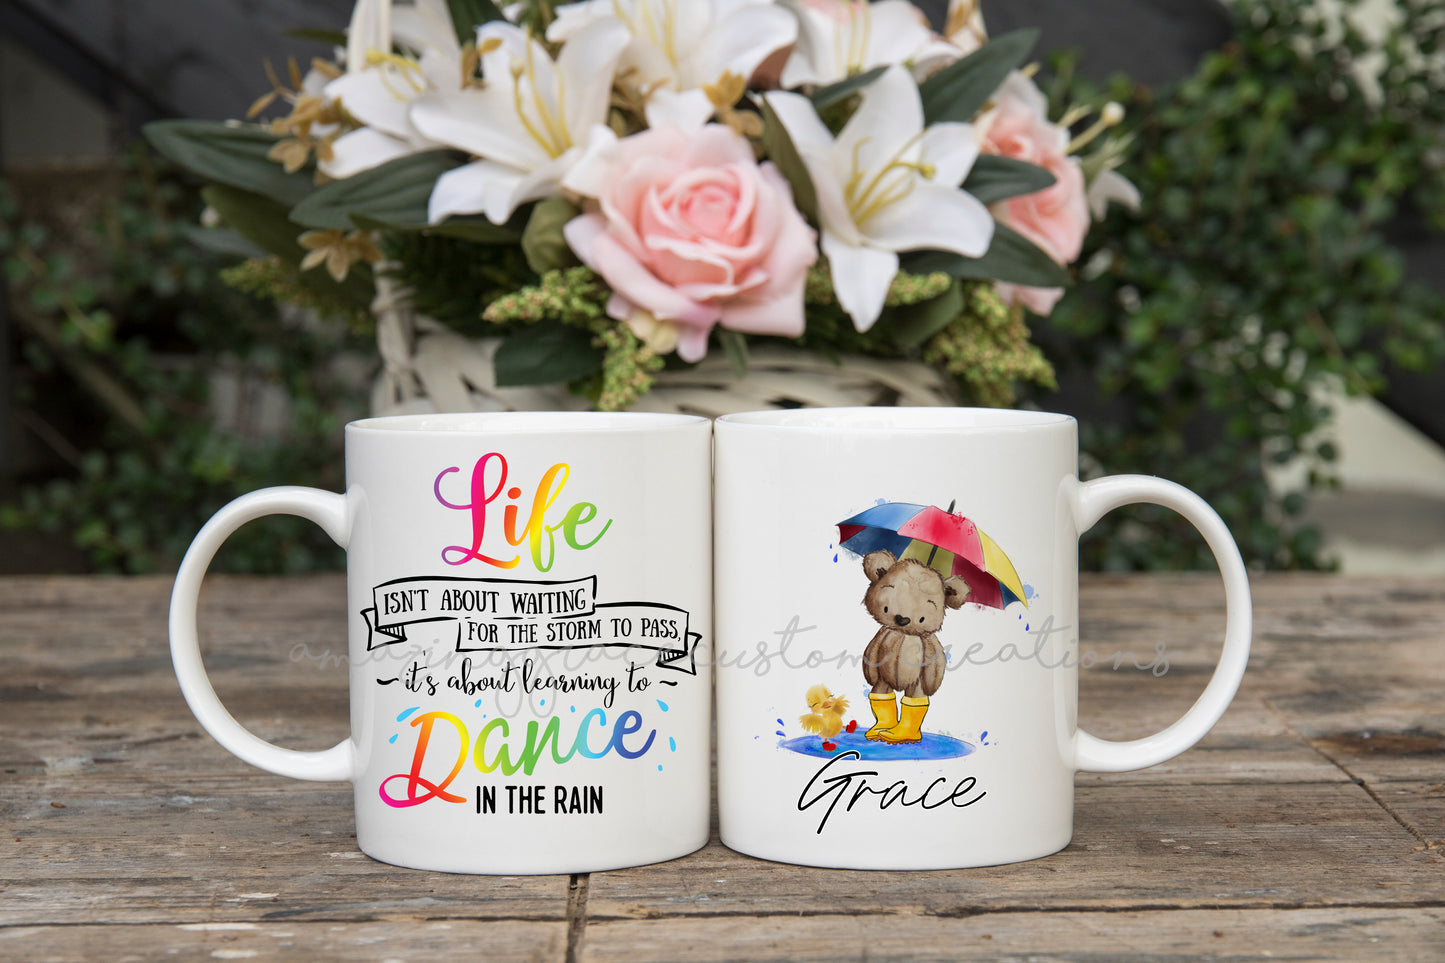 Dance in the rain personalised mug